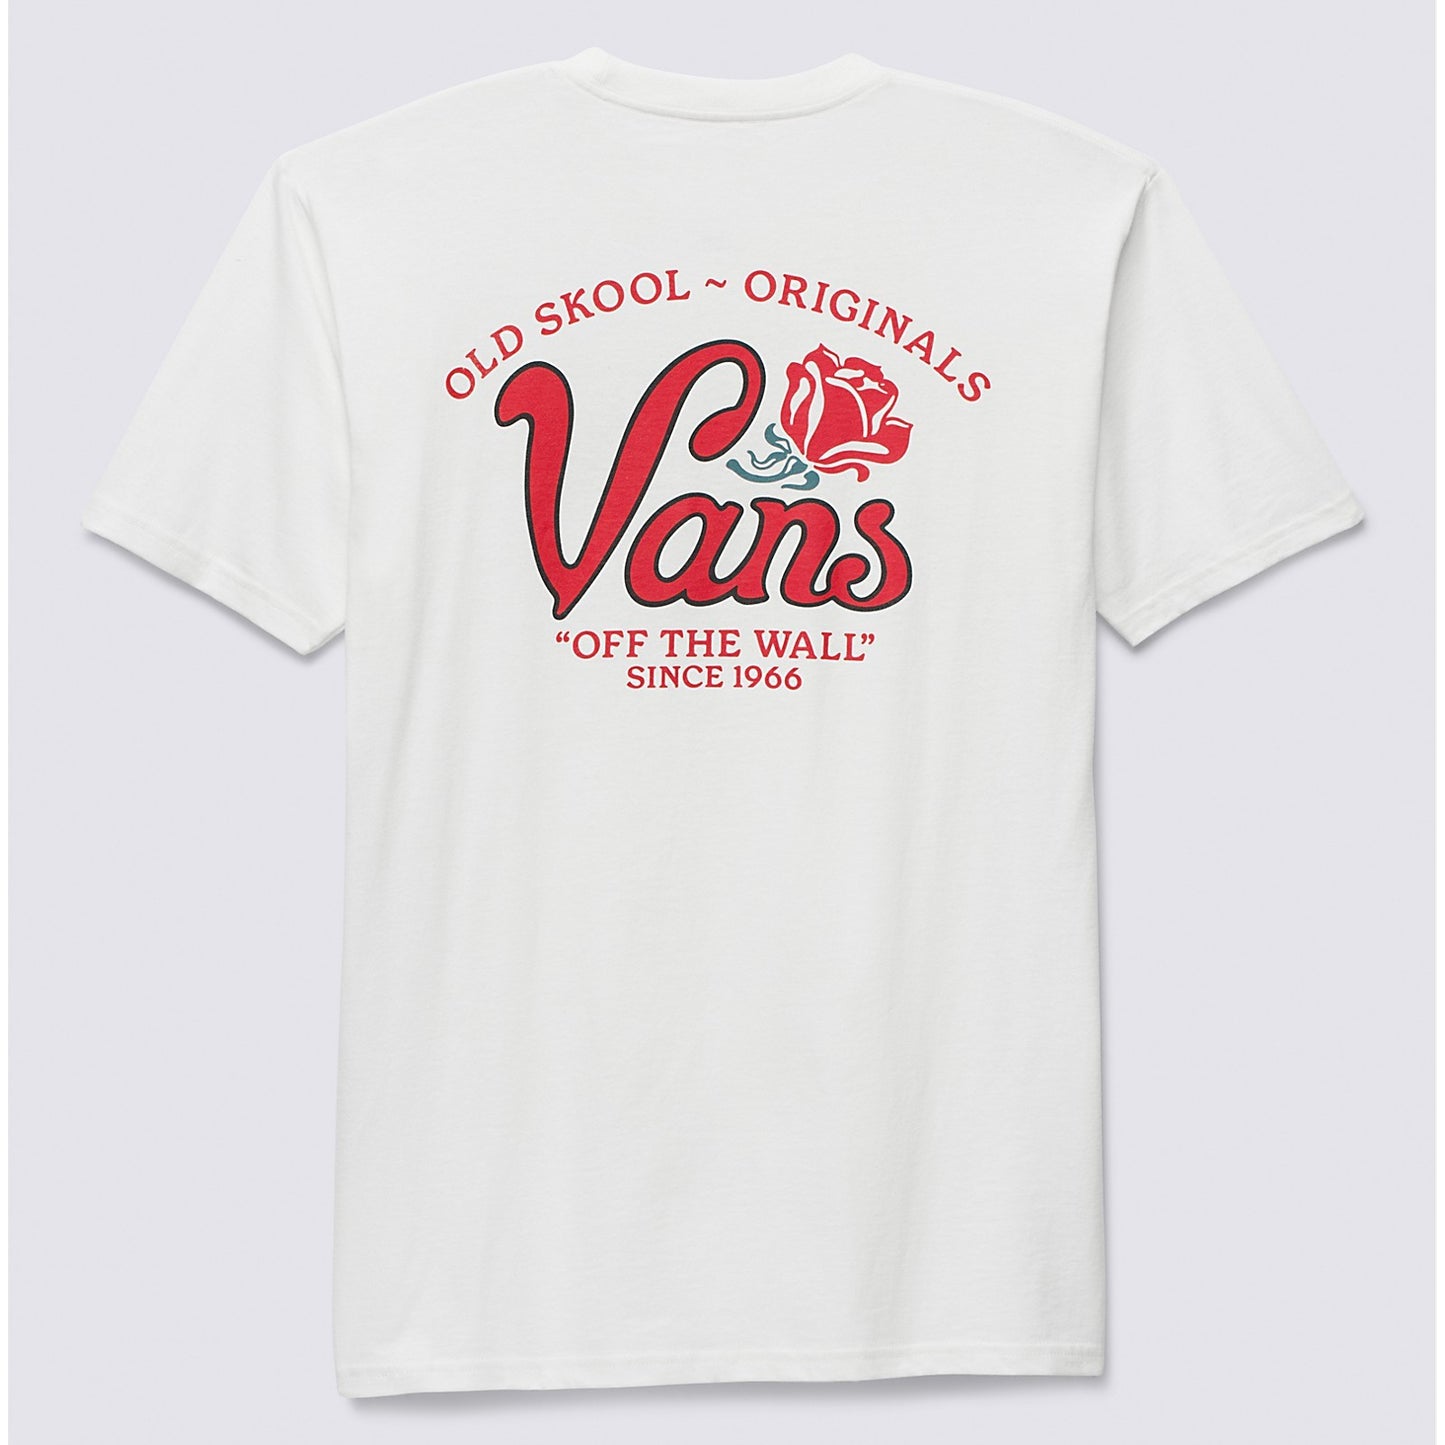 VANS Pasa T-Shirt - Cream